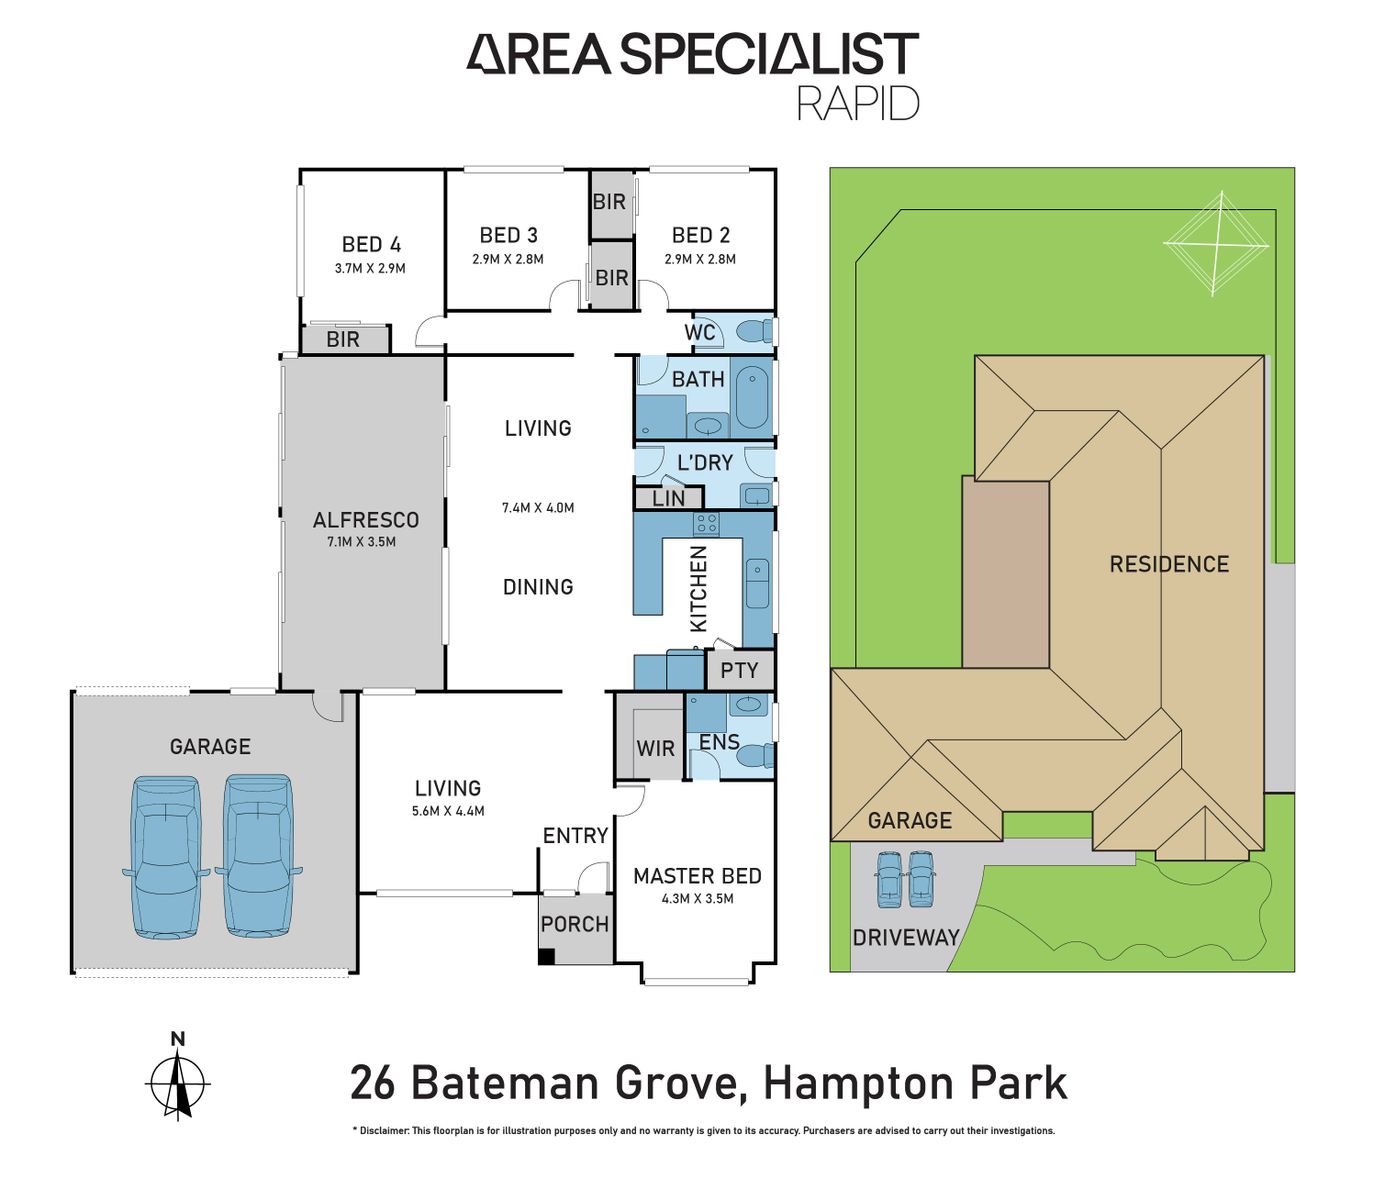 26 Bateman Grove, Hampton Park area specialist rapid